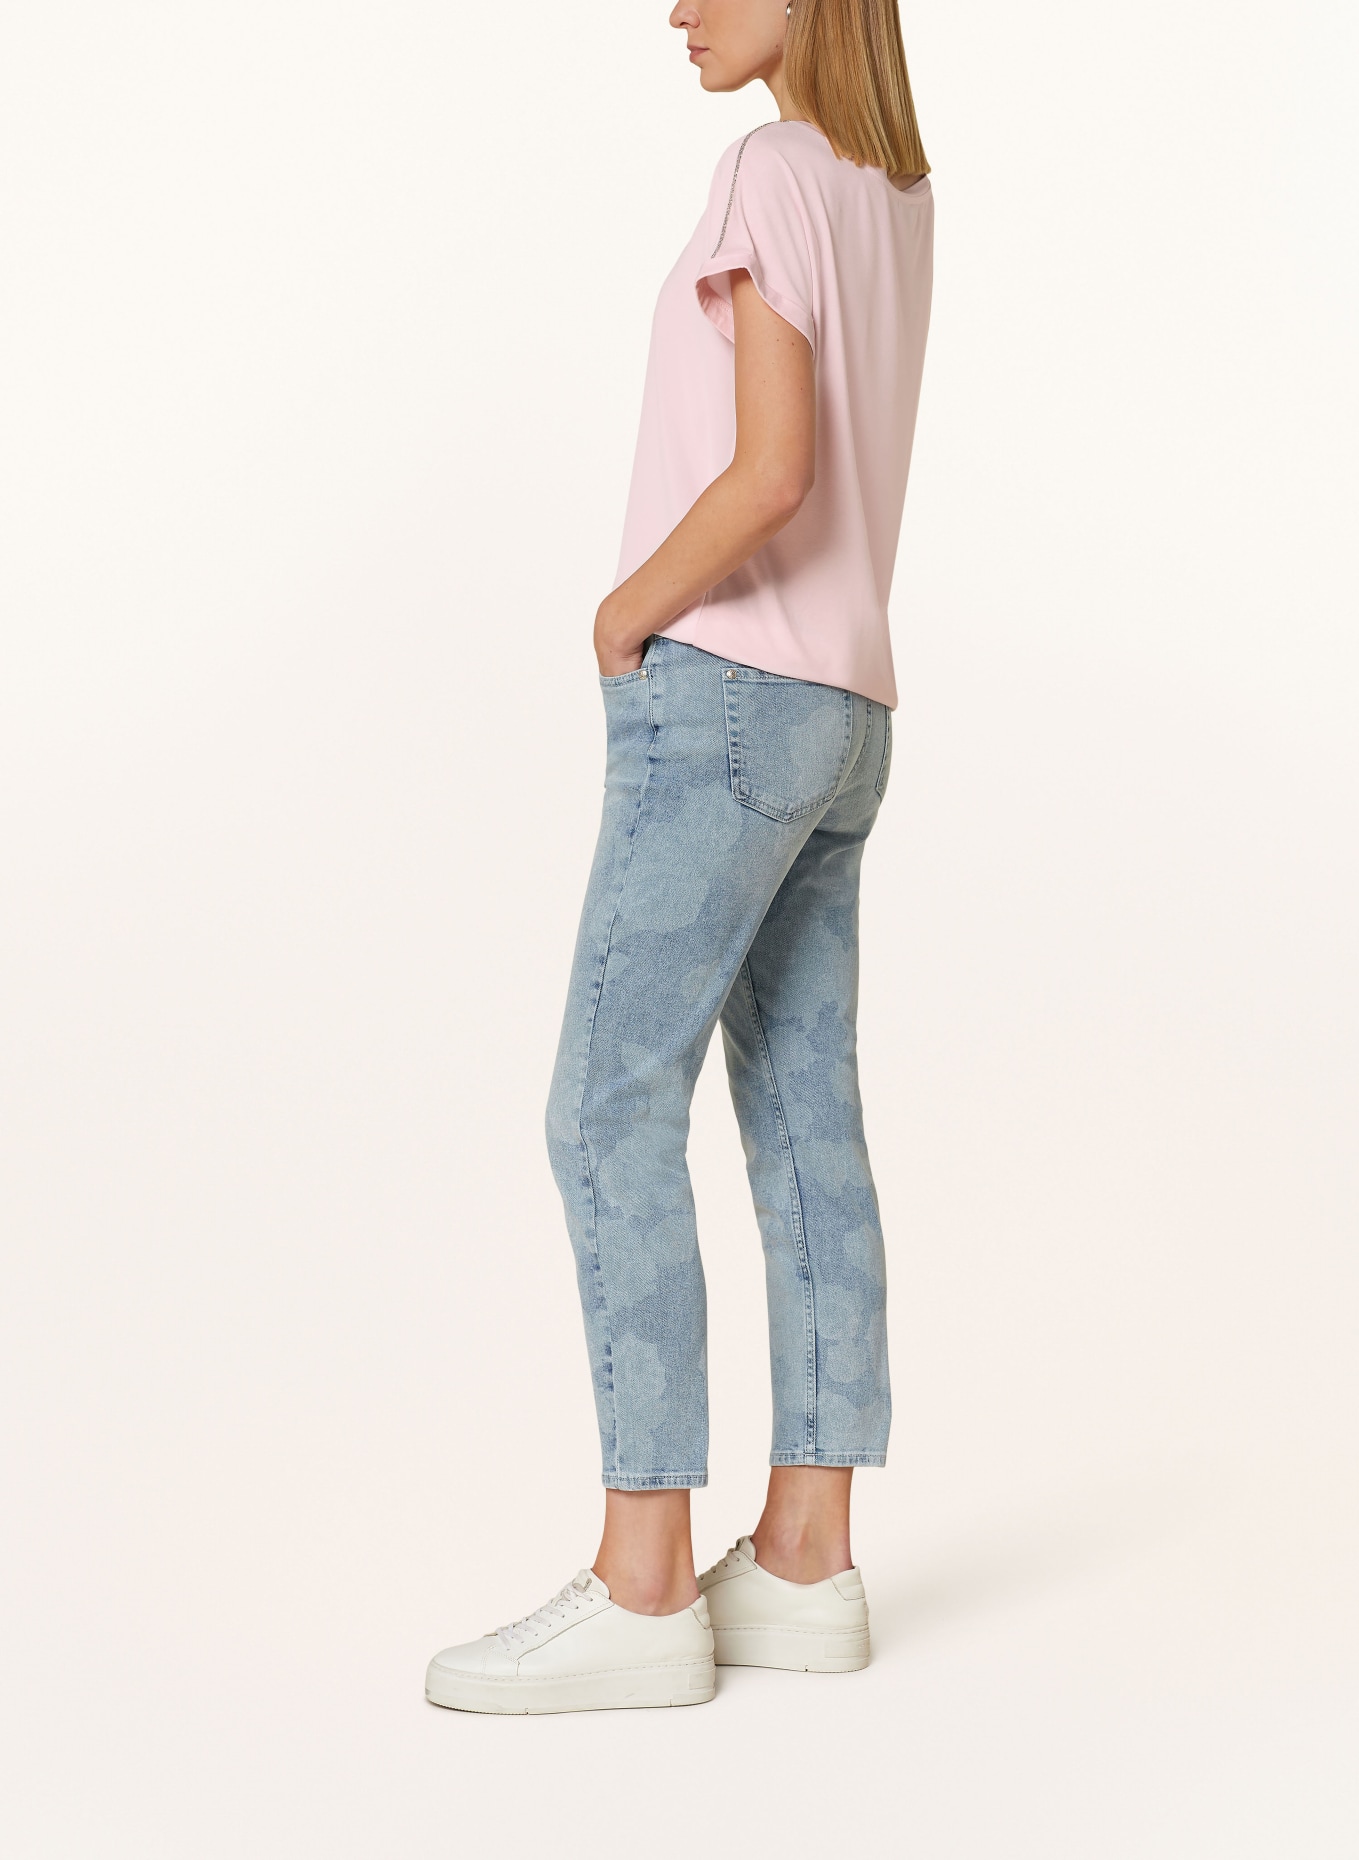 monari 7/8 Jeans, Color: 750 jeans (Image 4)